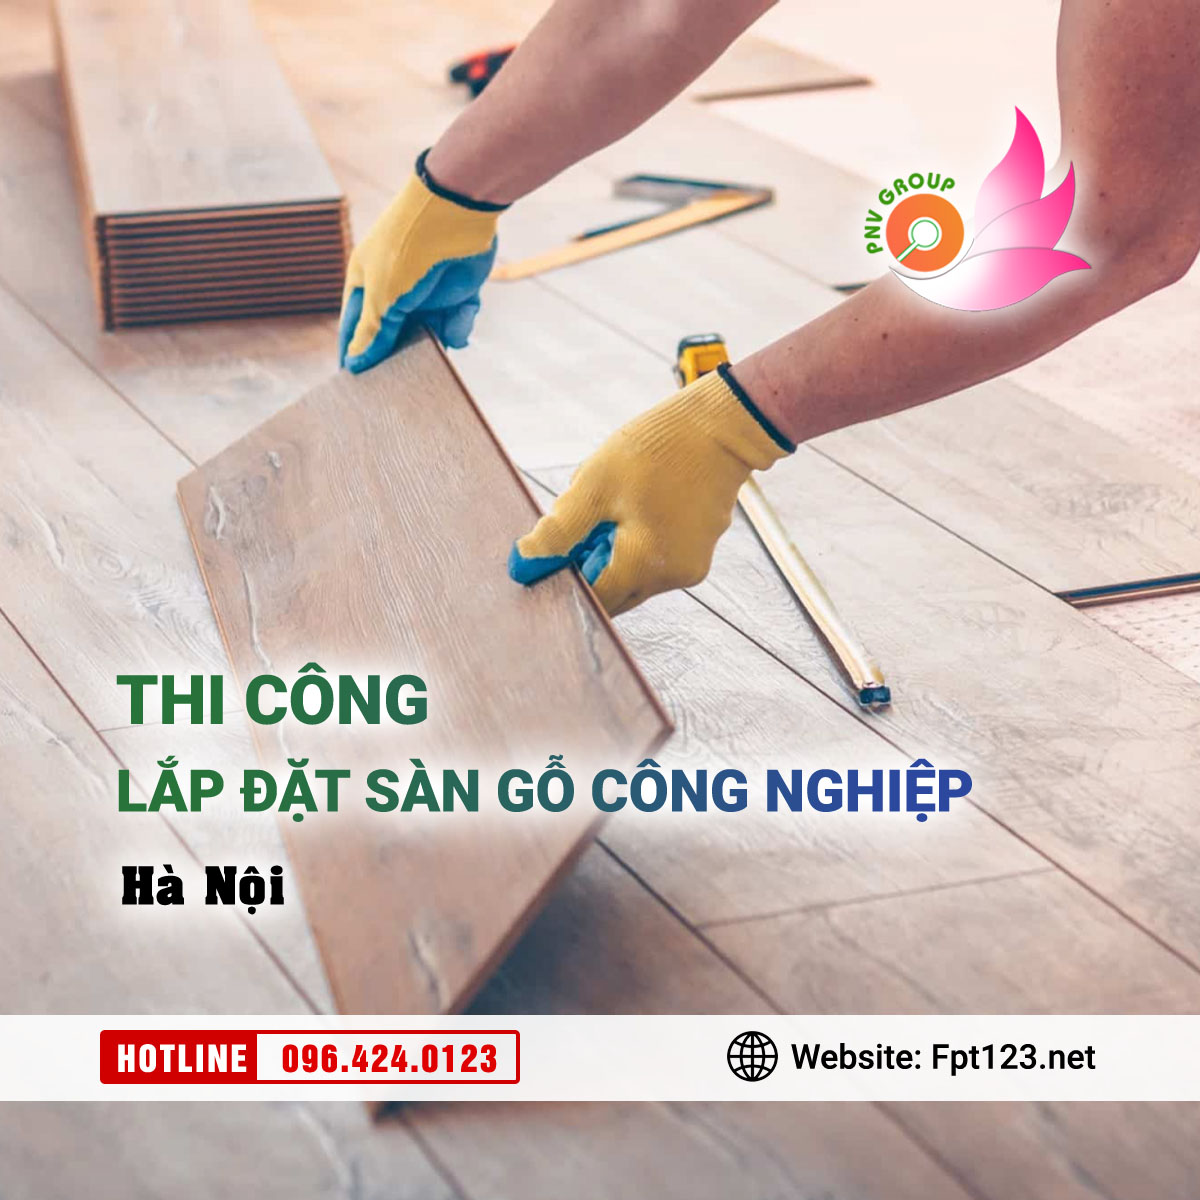 Chuyên thi công lắp đặt sàn gỗ công nghiệp tại Hà Nội